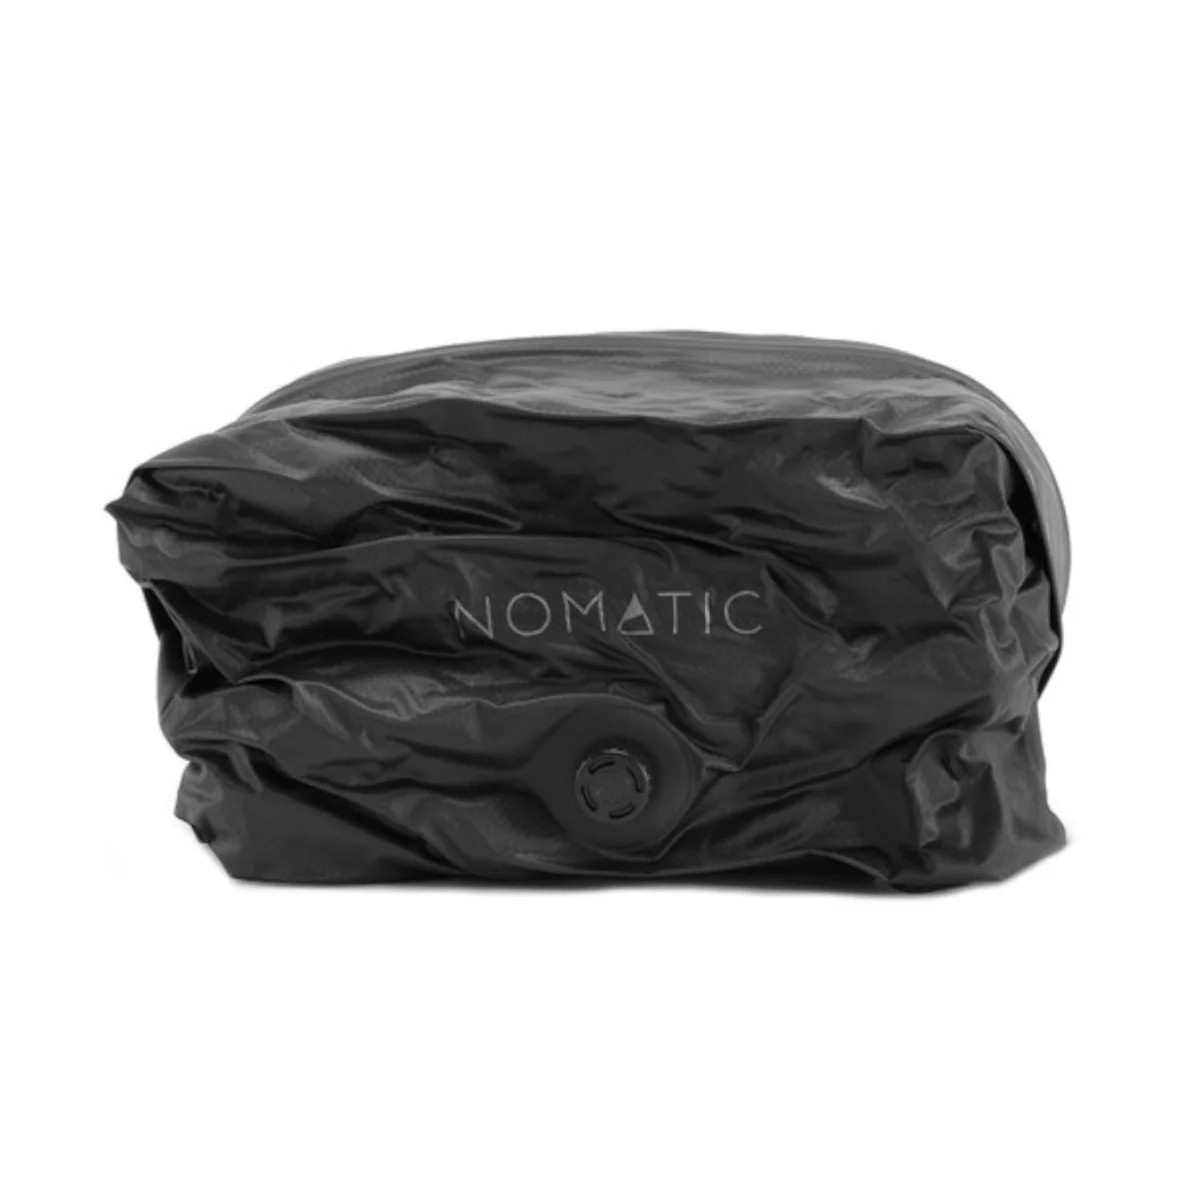 Nomatic Vacuum Bag 2.0